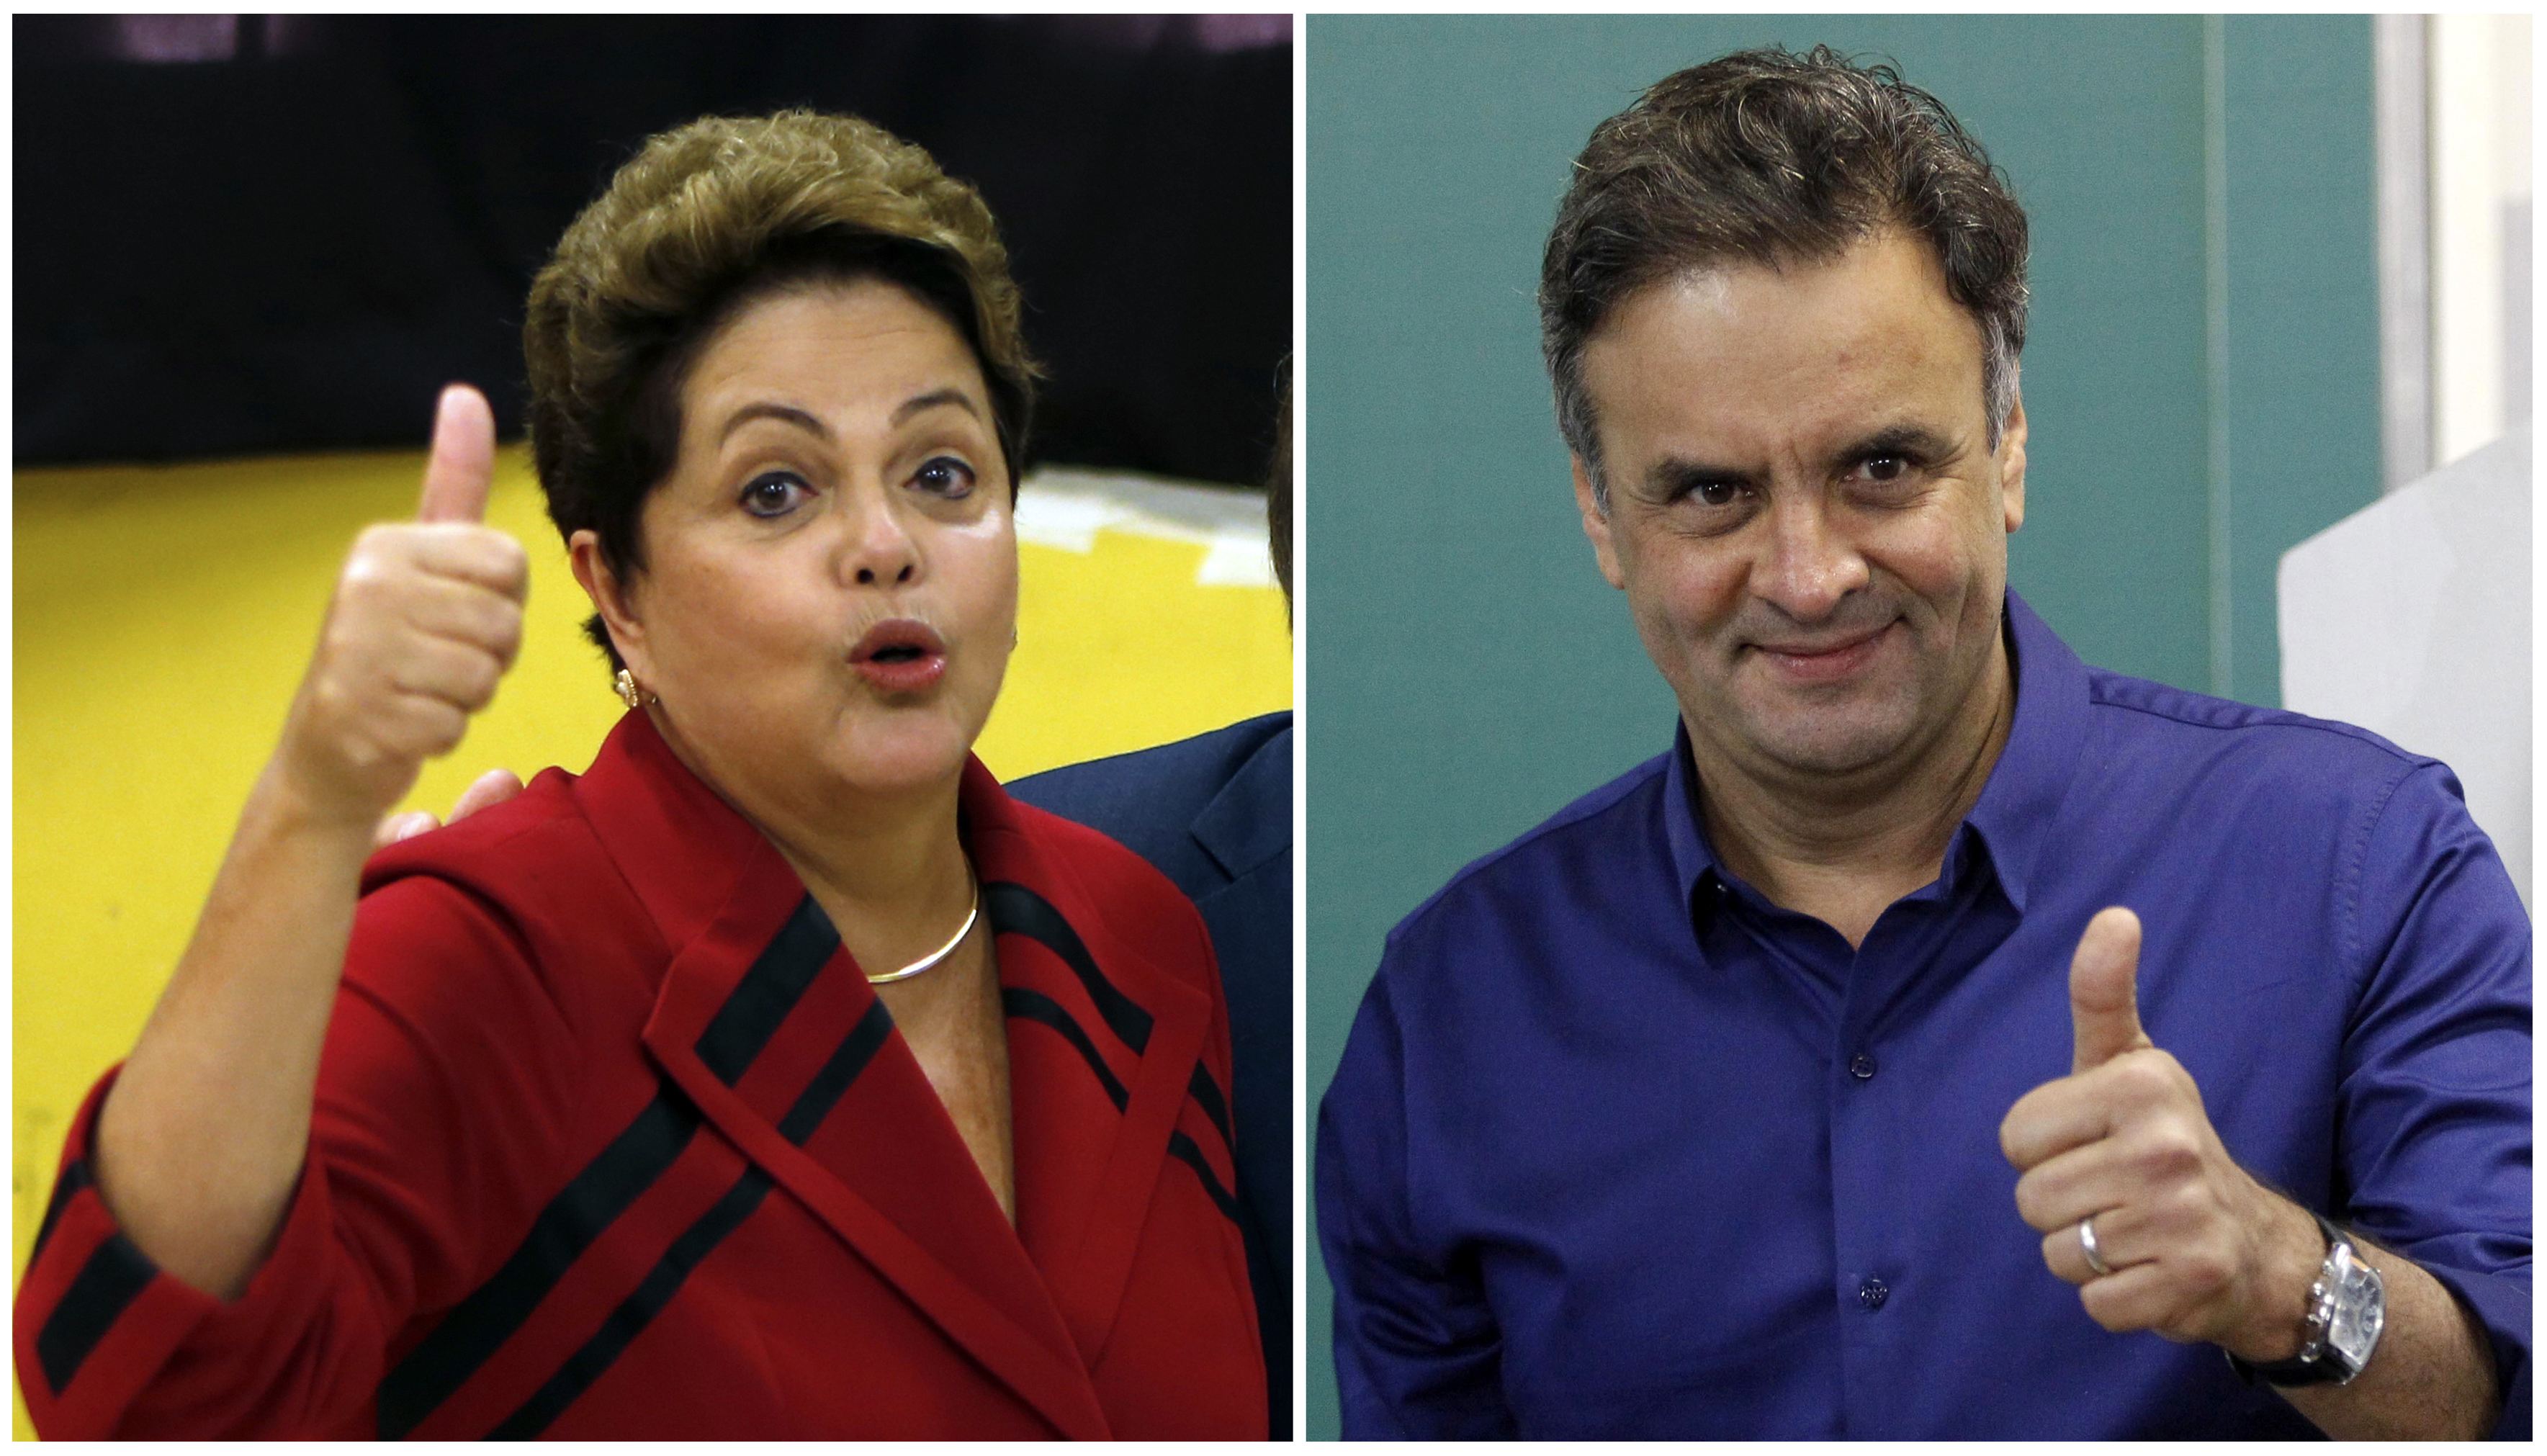 Neves parte con leve ventaja sobre Rousseff en primeras encuestas sobre balotaje